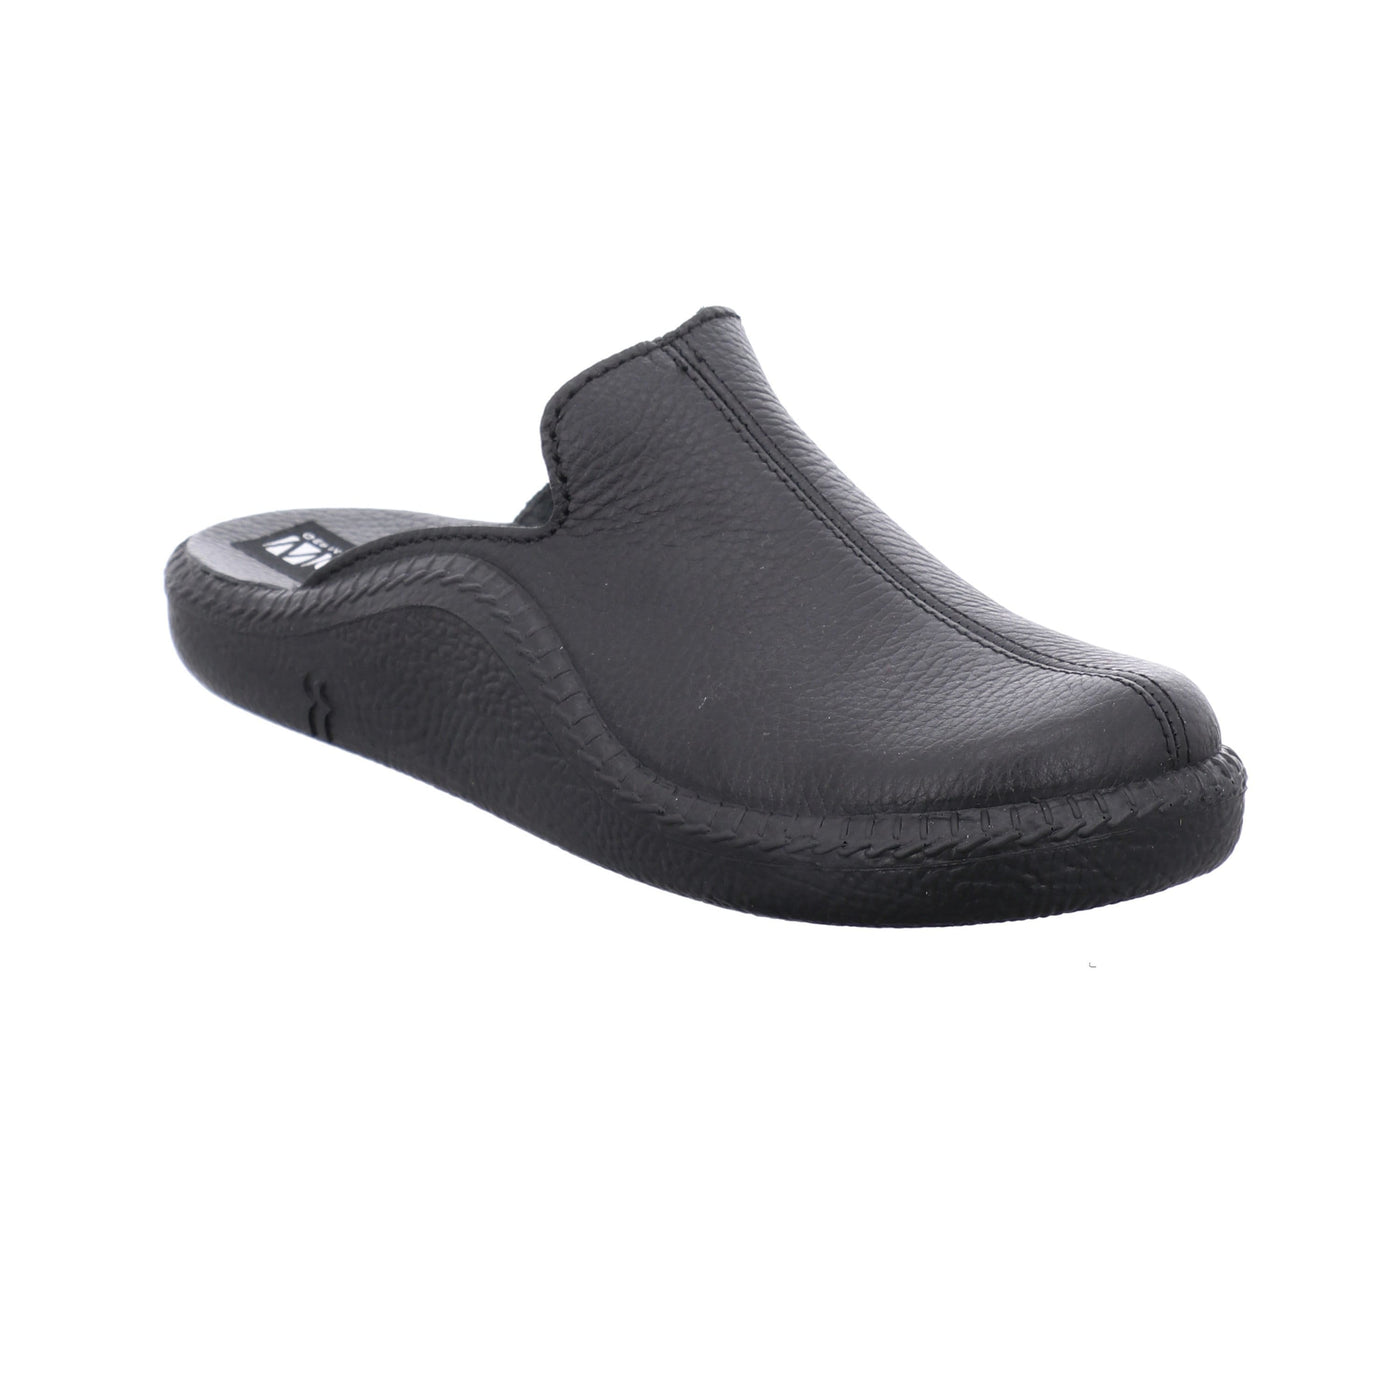 Romika Westland Monaco 202 G | Chaussures confortables - 39 / Noir - Pantoufles homme